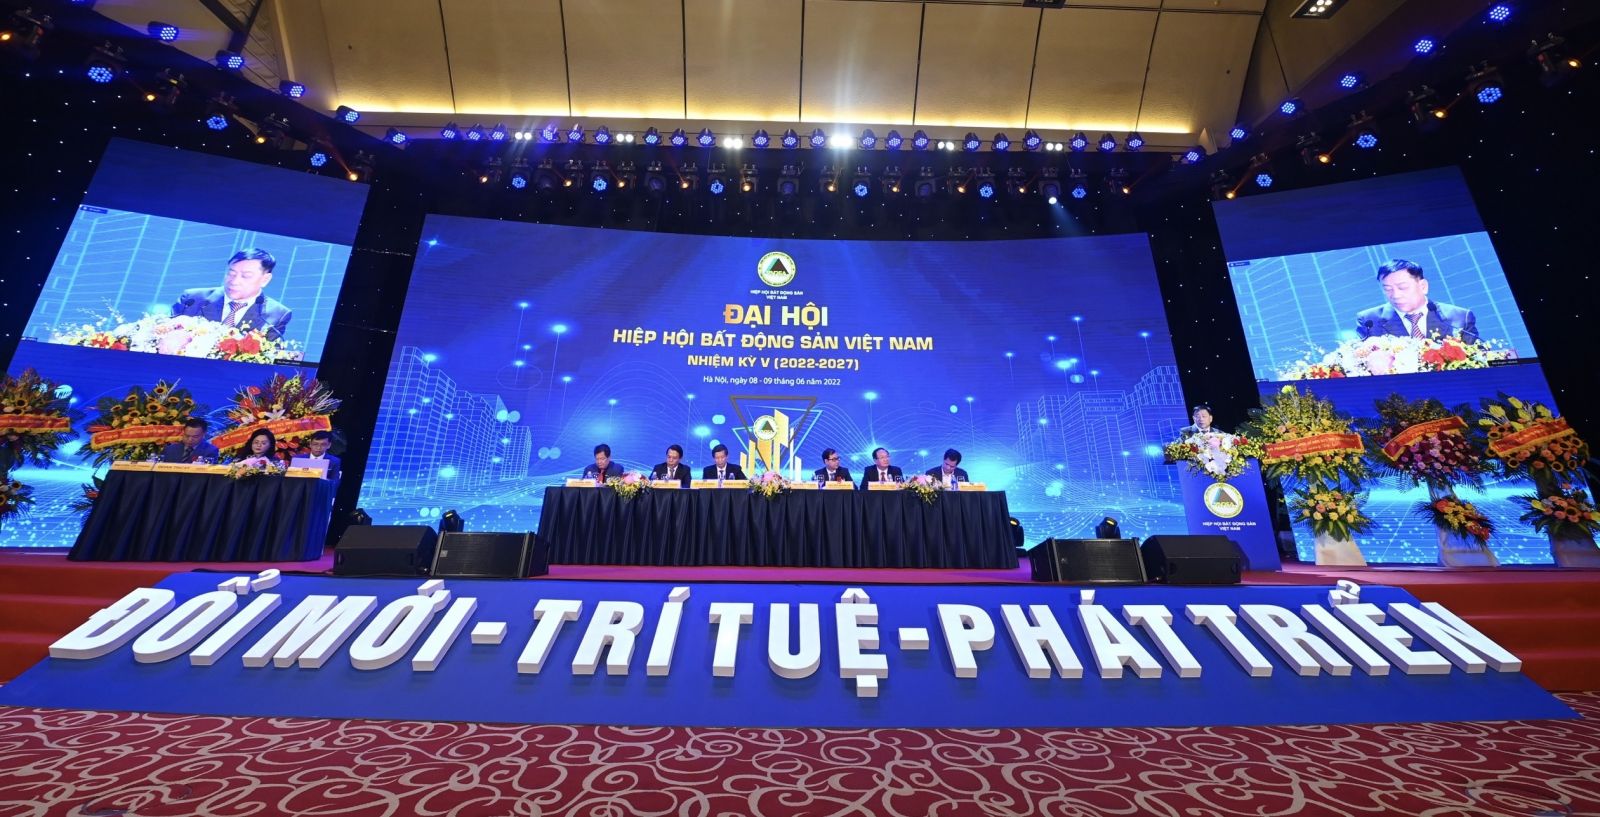 Đại hội Hiệp hội Bất động sản Việt Nam lần thứ V nhiệm kỳ 2022 - 2027, sự kiện quan trọng, ý nghĩa của cộng đồng doanh nghiệp bất động sản Việt Nam trong năm 2022. Ảnh: Retimes.vn